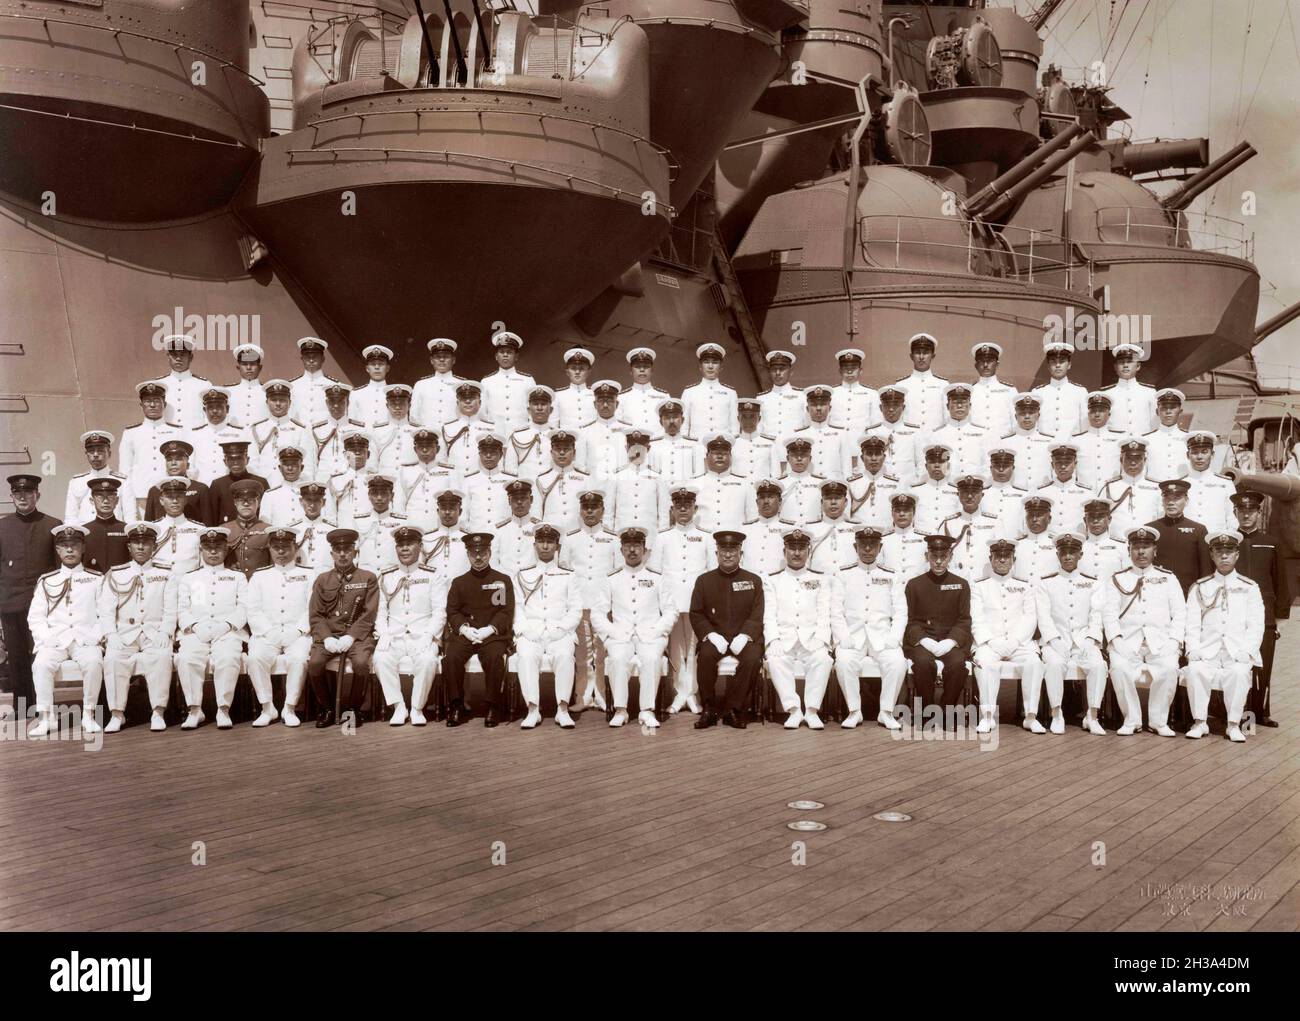 Imperatore Hirohito del Giappone (prima fila, centro), con ufficiali della Marina Imperiale Giapponese, a bordo della corazzata giapponese Musashi al largo della base navale di Yokosuka, 24 giugno 1943. L'ammiraglio Osami Nagano è sesto da sinistra in prima fila. Foto Stock